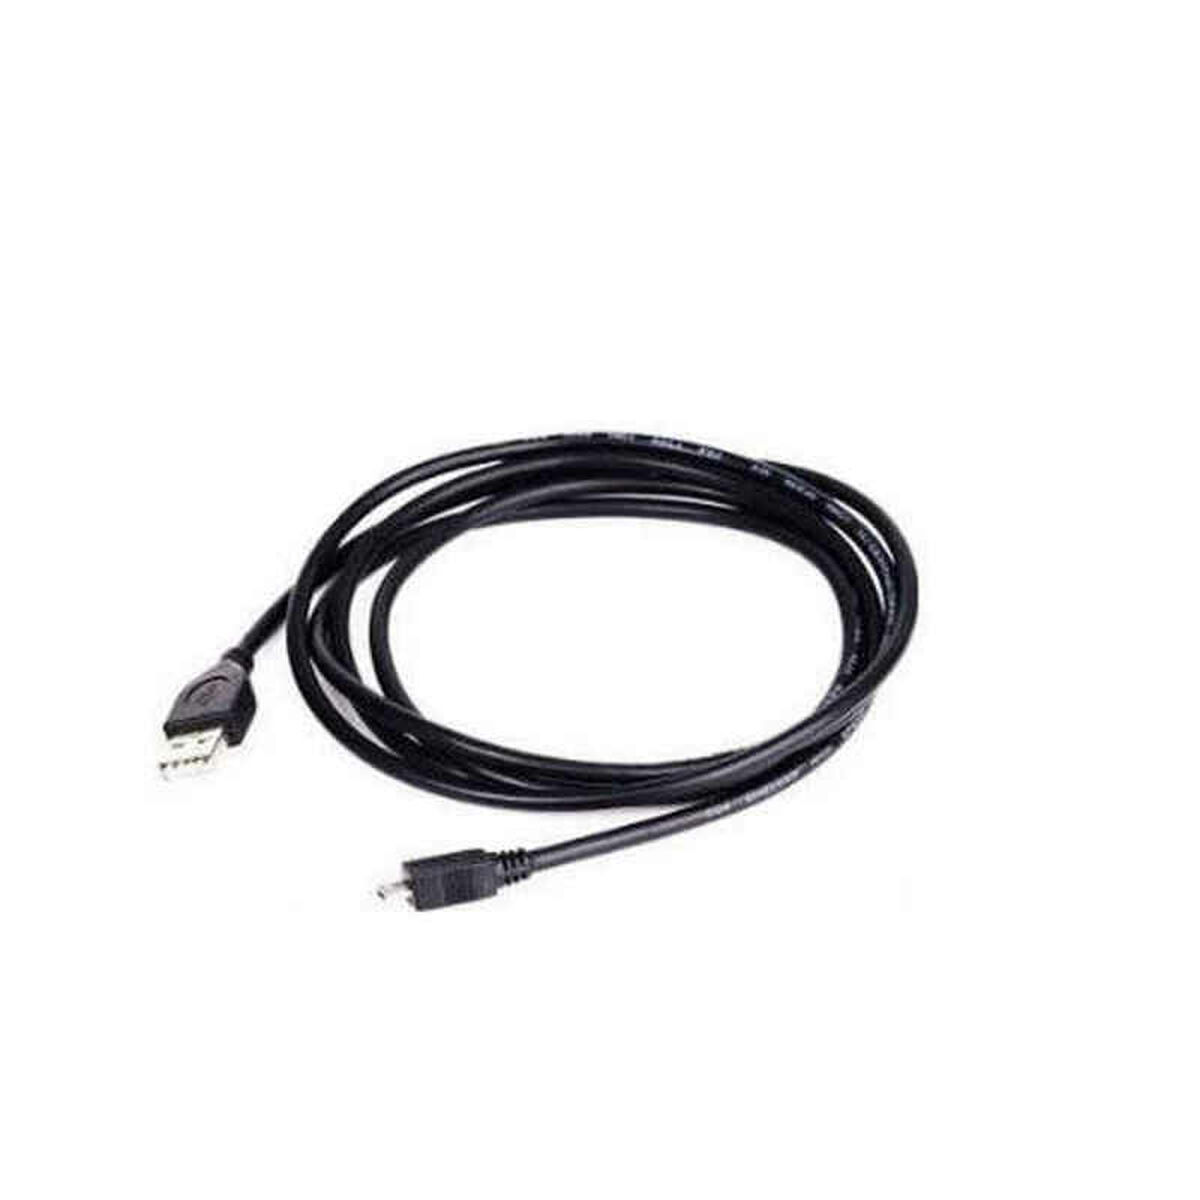 Cablu USB 2.0 A la Micro USB B GEMBIRD (3 m) Negru - Măsură 1,8 m